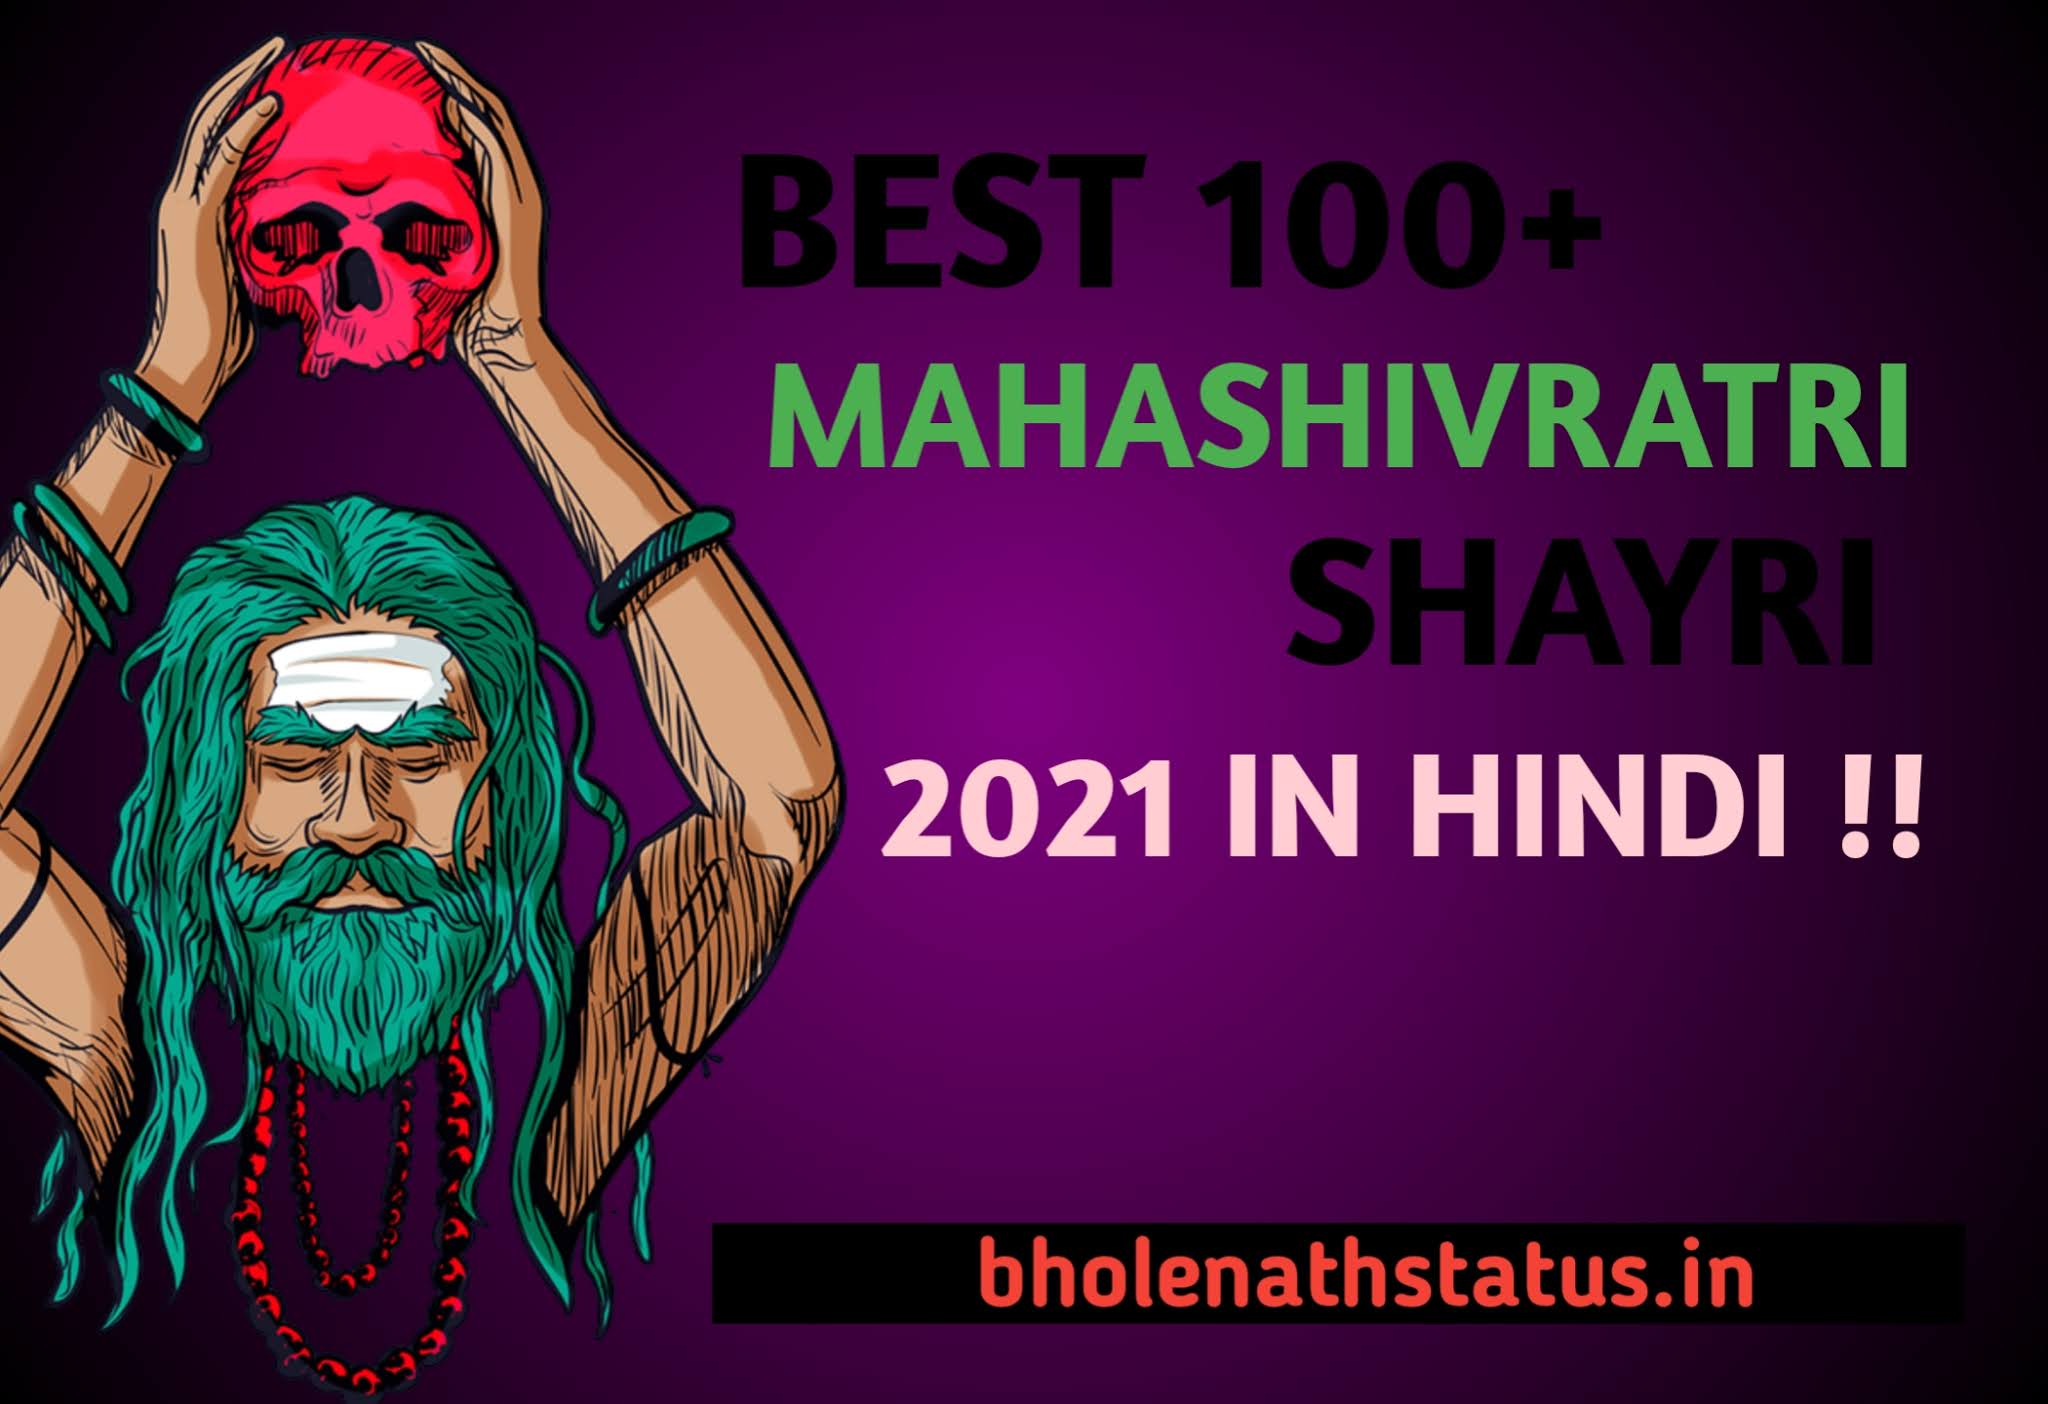 Best 100+ Mahashivratri Shayri Message In Hindi - महाशिवरात्रि शायरी इन हिन्दी For WhatsApp